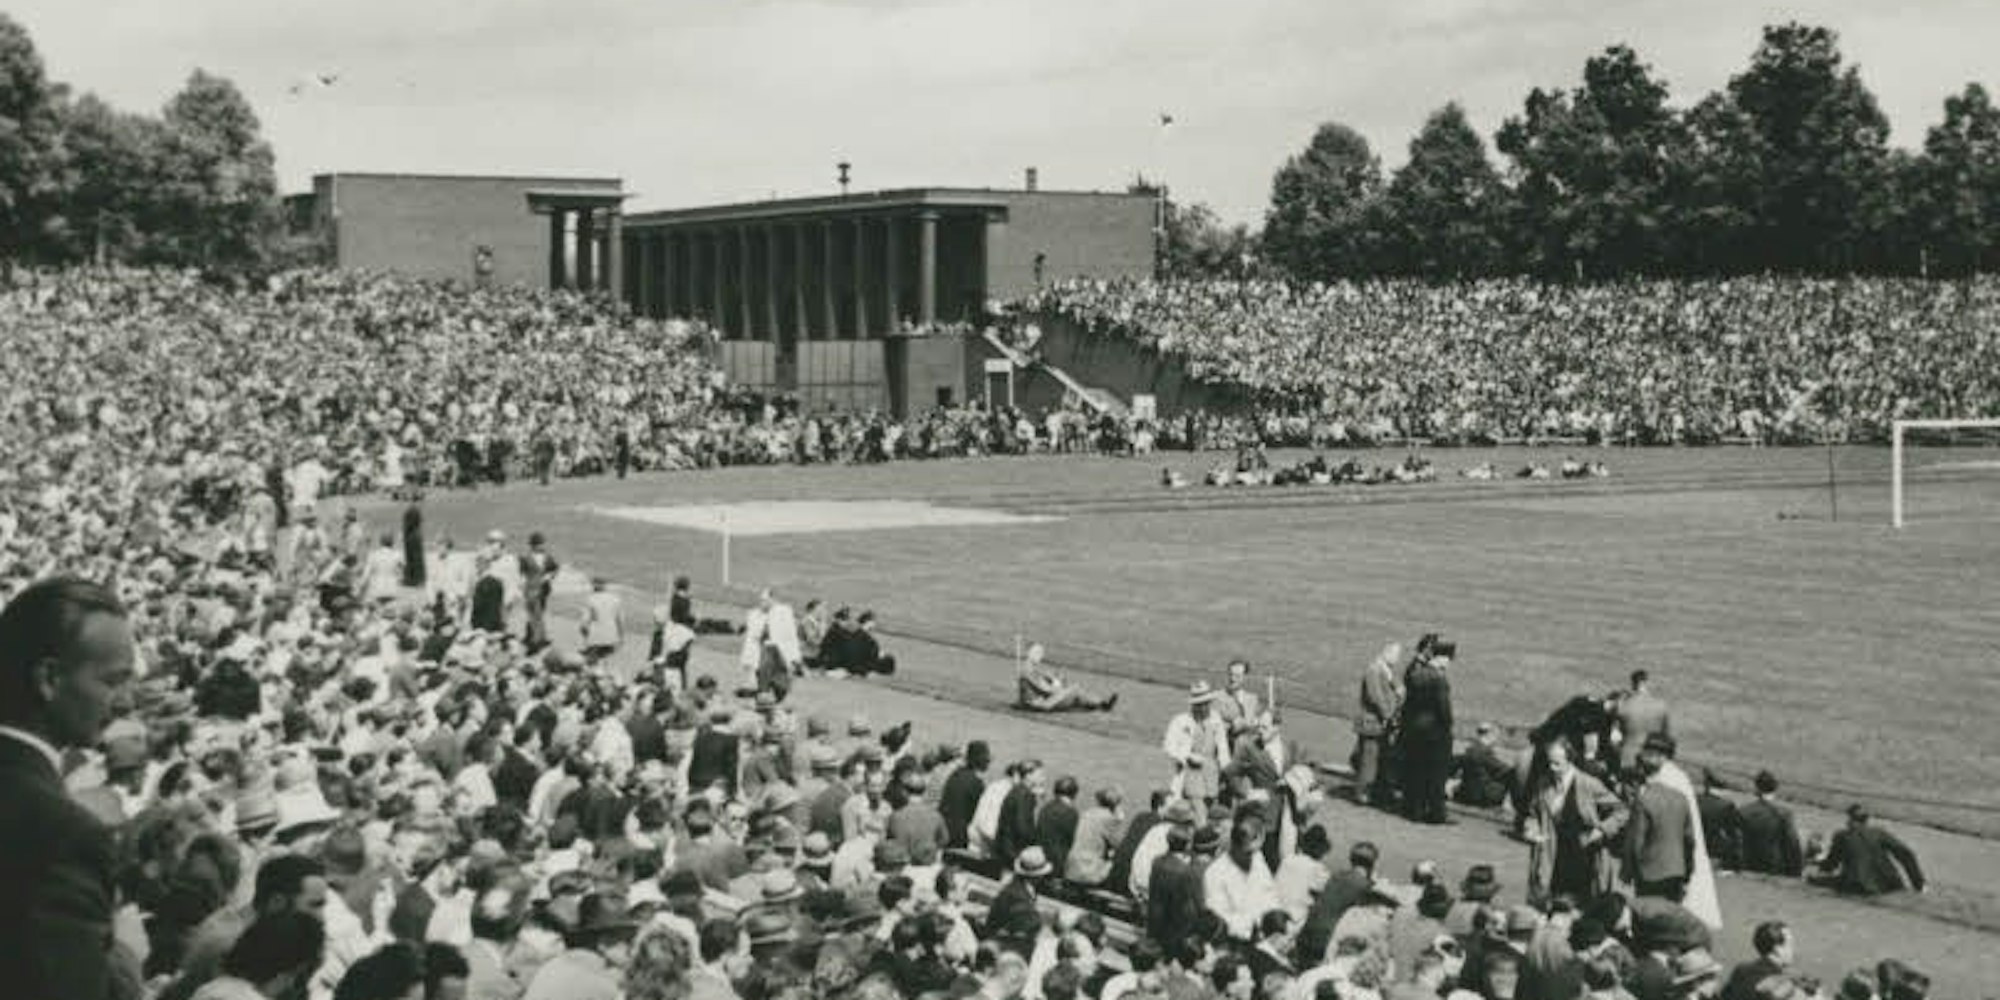 Das erste Finale um die Deutsche Fußballmeisterschaft nach dem Krieg fand 1948 zwischen dem 1. FC Nürnberg und dem 1. FC Kaiserslautern (2:1) in Köln statt.